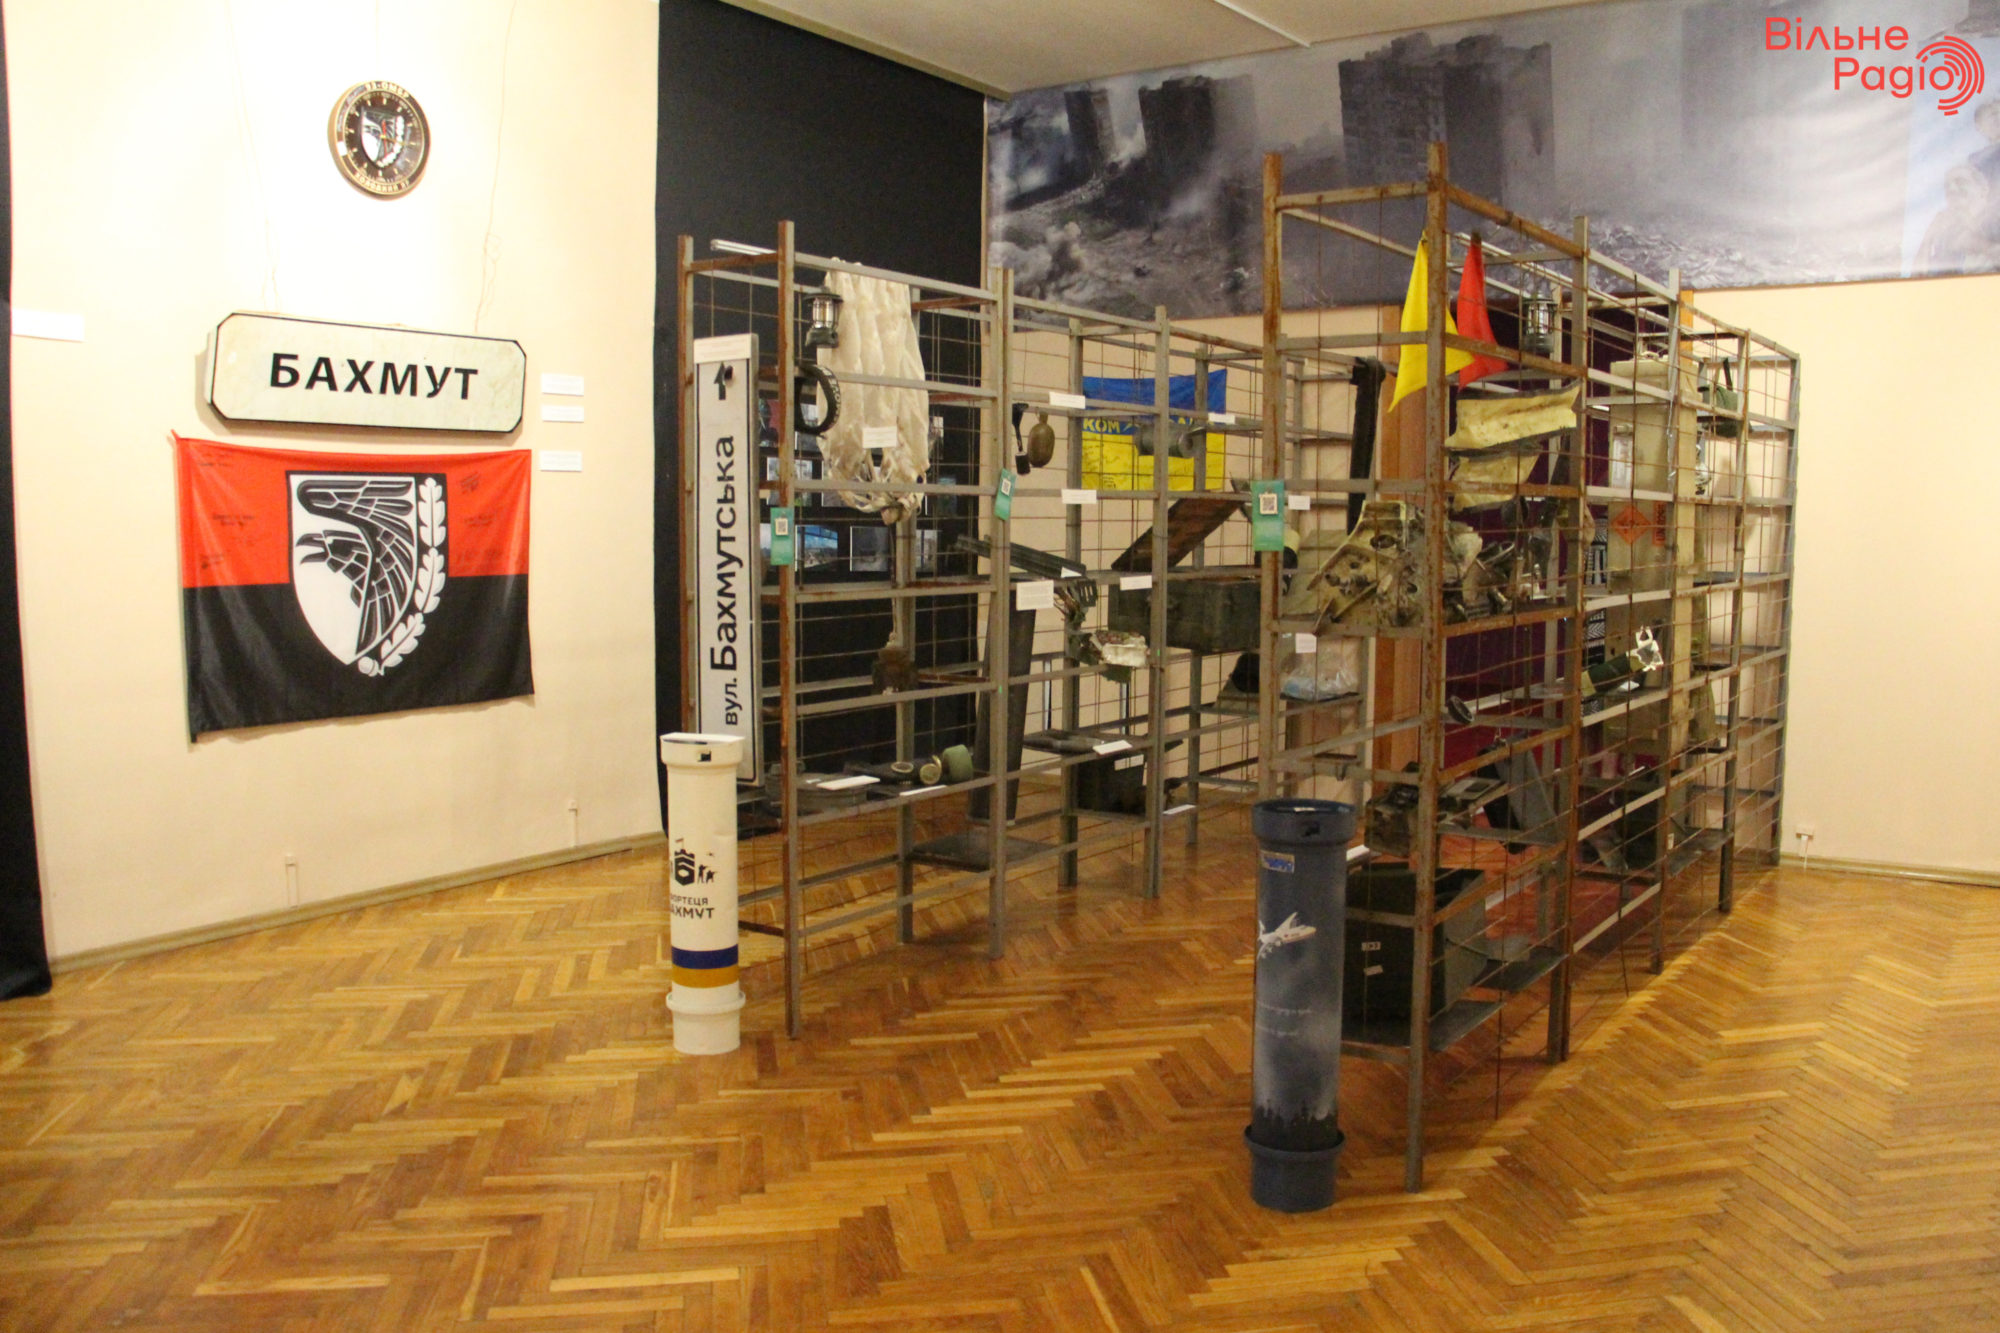 Виставка "Фортеця Бахмут" у Національному музеї історії України